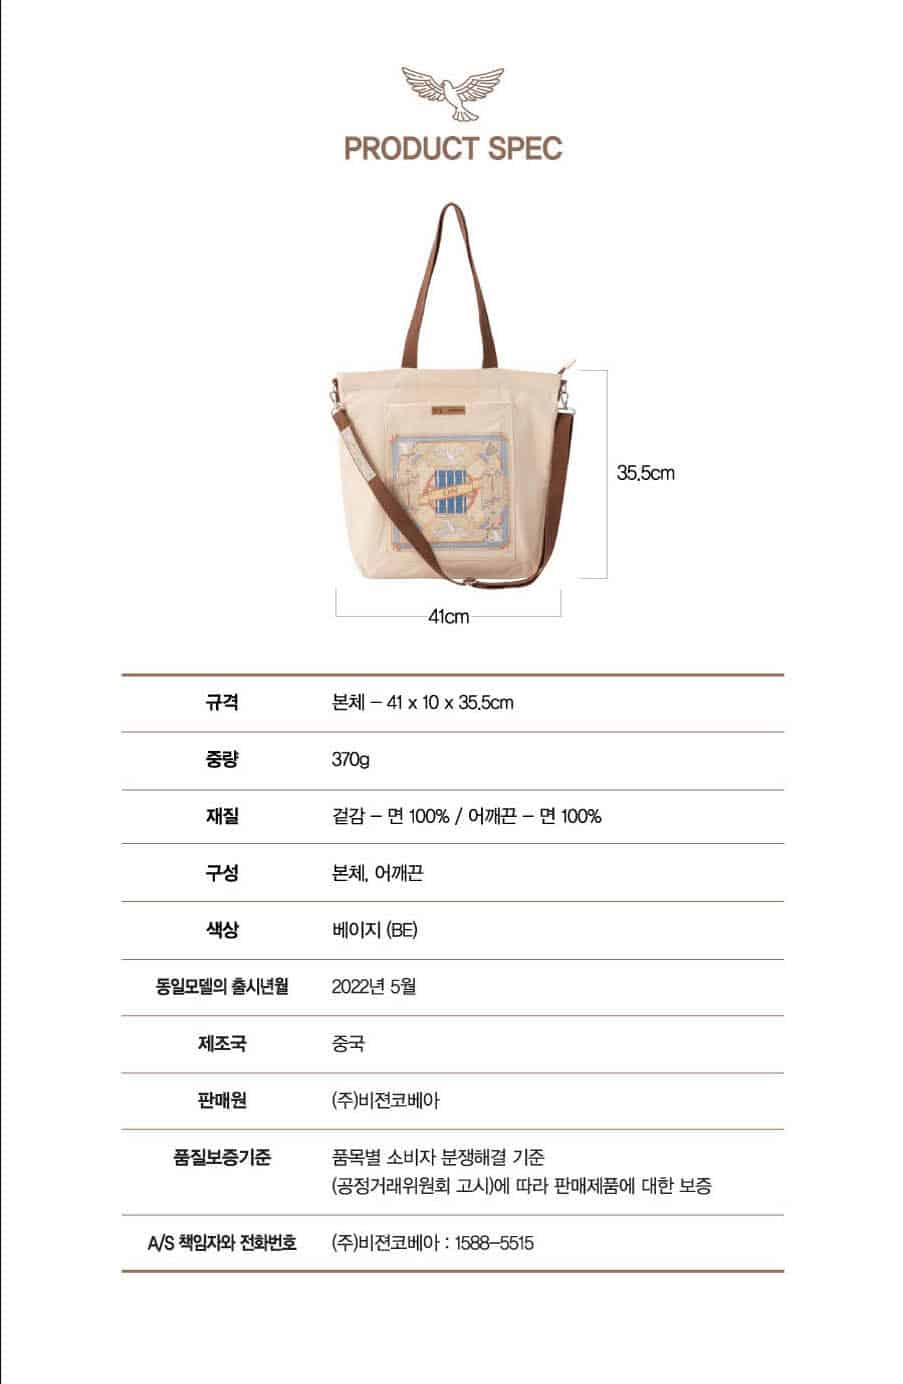 BTS x Kovea - Eco Bag ON – K-Moon